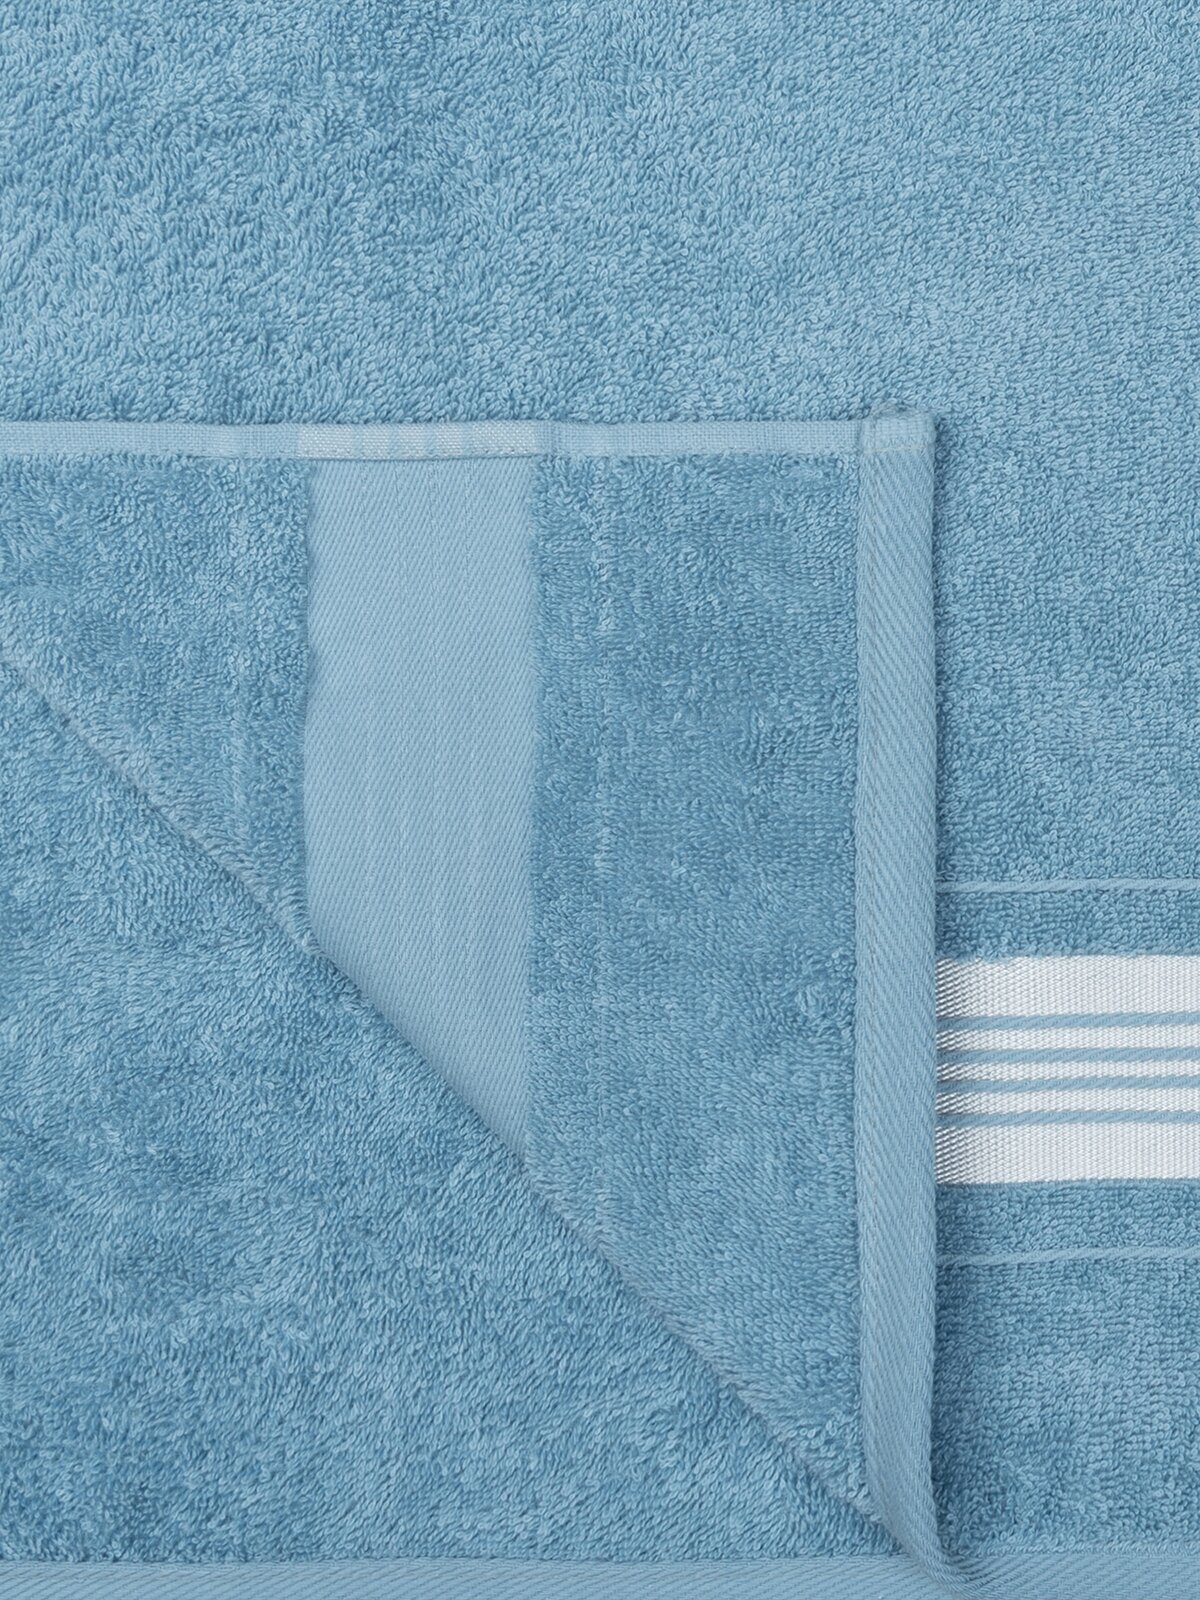 Полотенце банное махровое, Донецкая мануфактура,Ice shine, 70Х130 см, цвет: голубой, 100% хлопок - фотография № 3